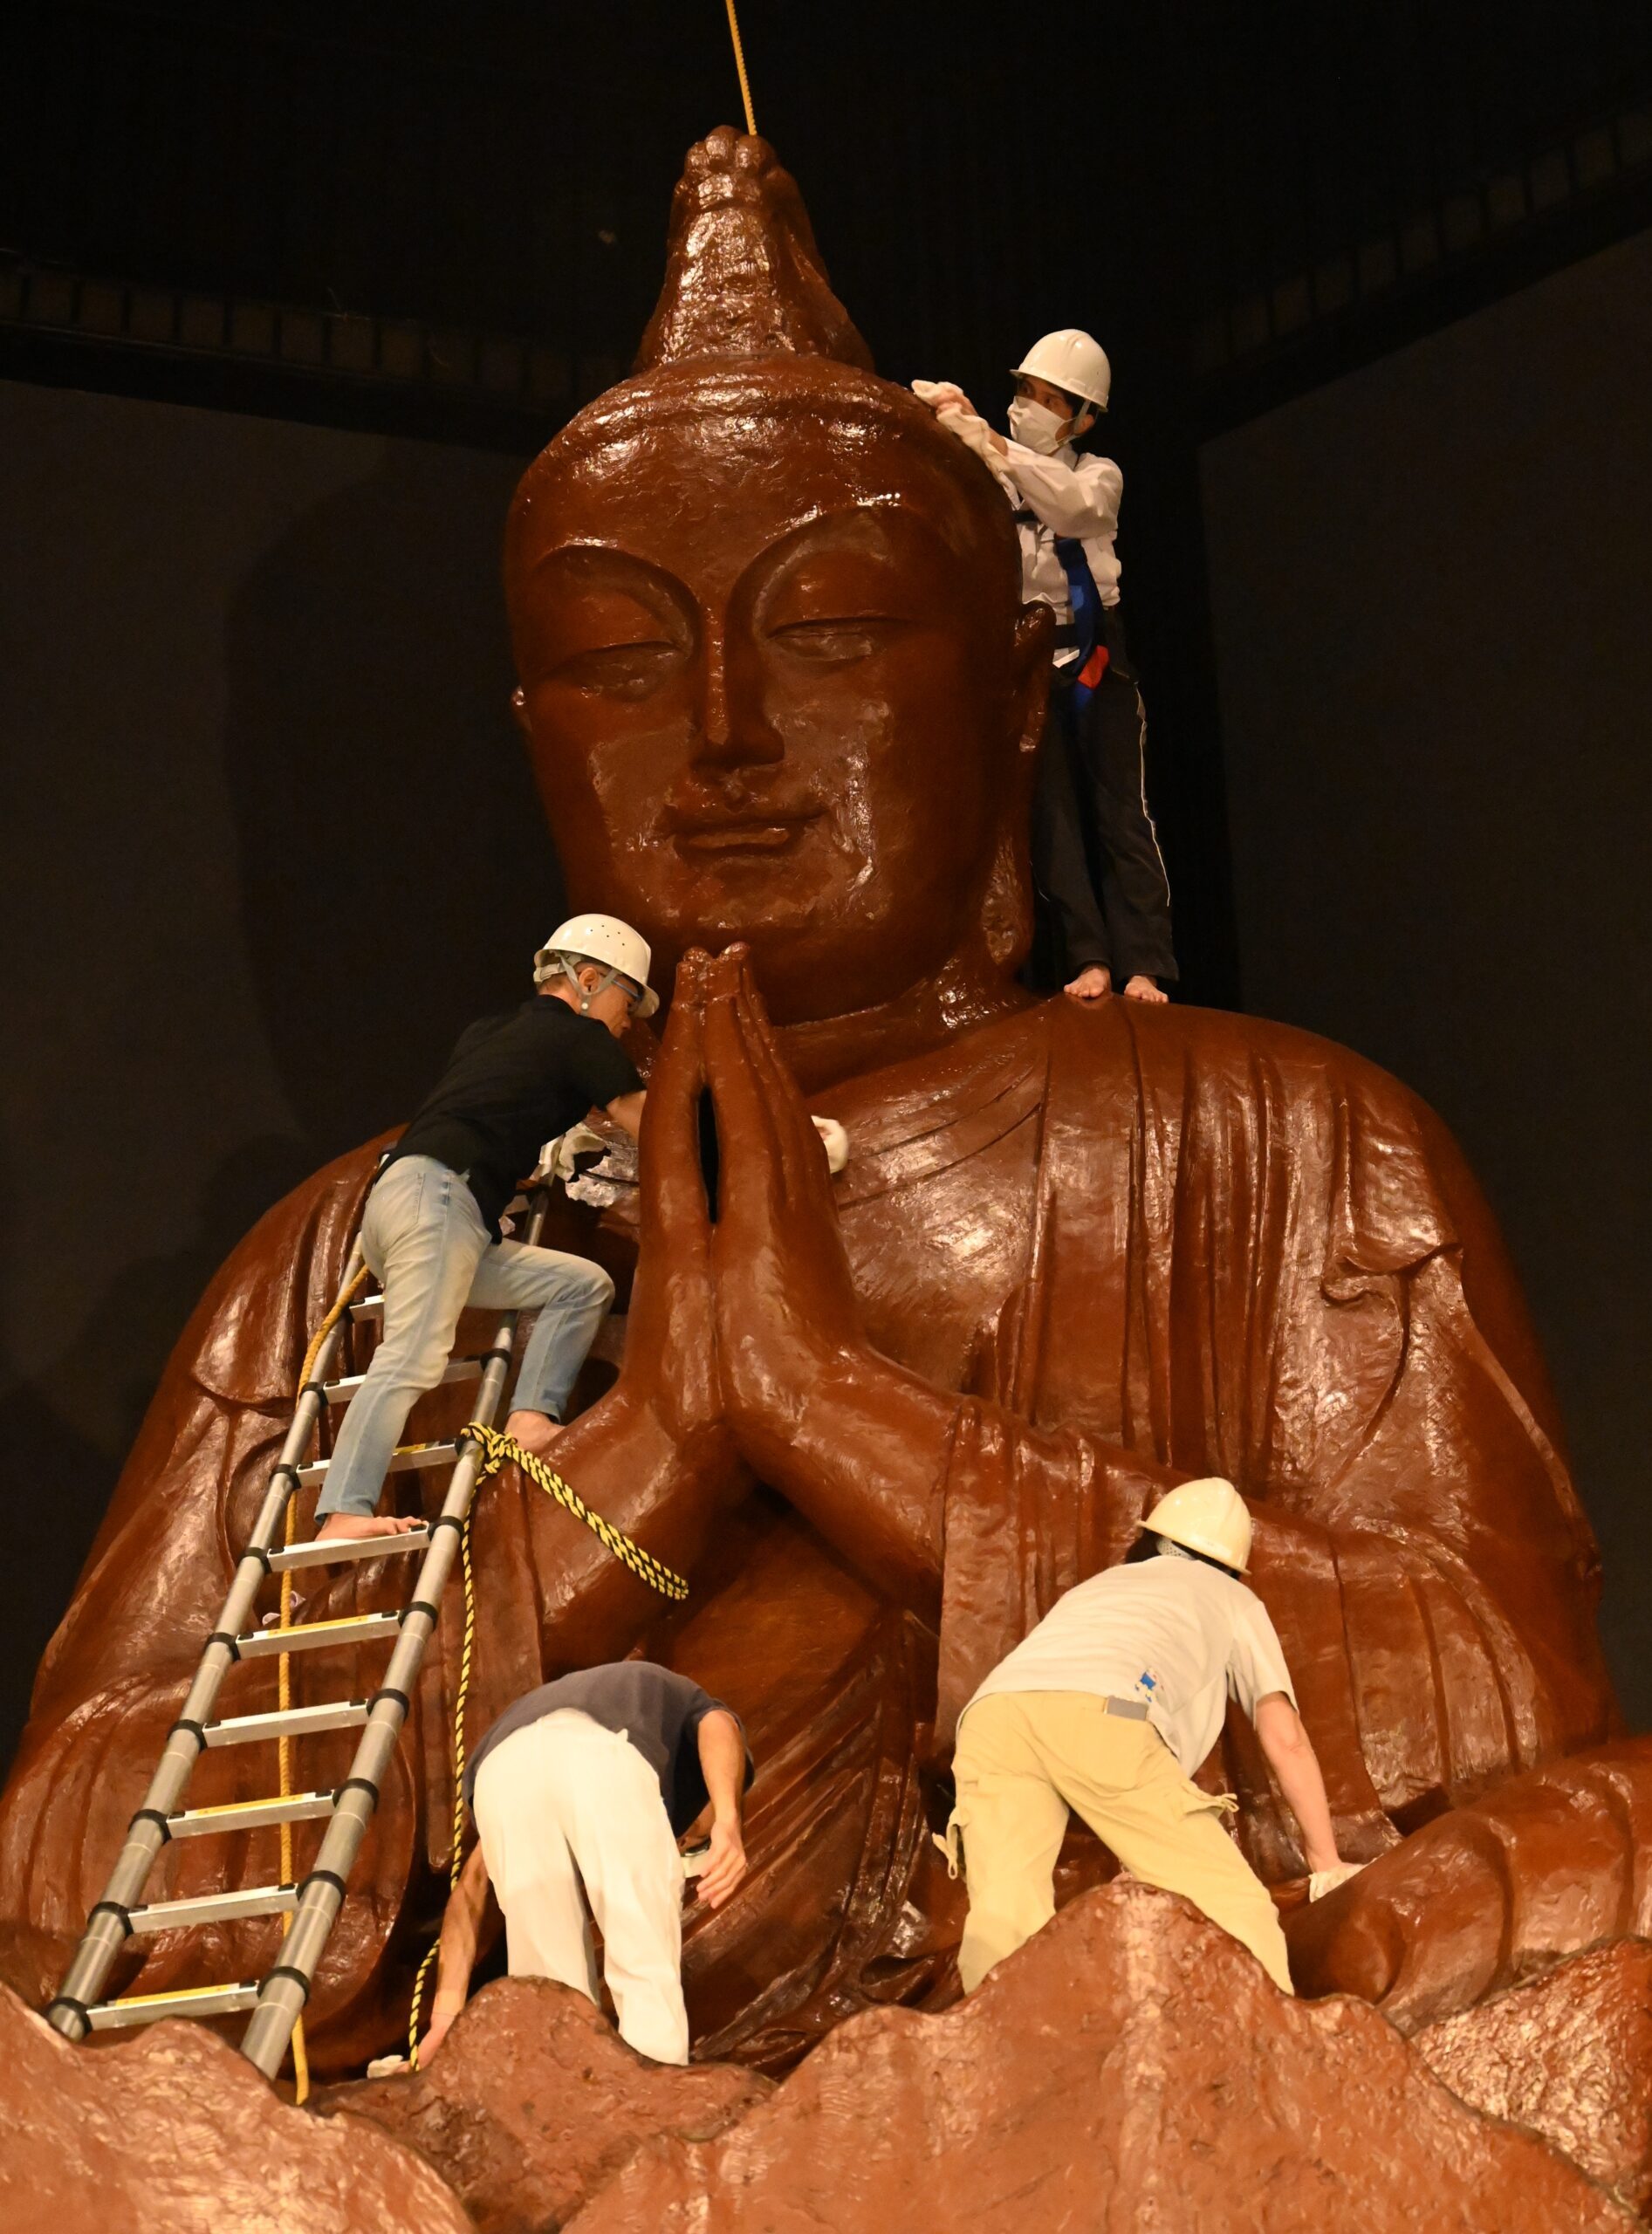 願う、世界の平和 祈念像「浄め」 沖縄 - 琉球新報デジタル